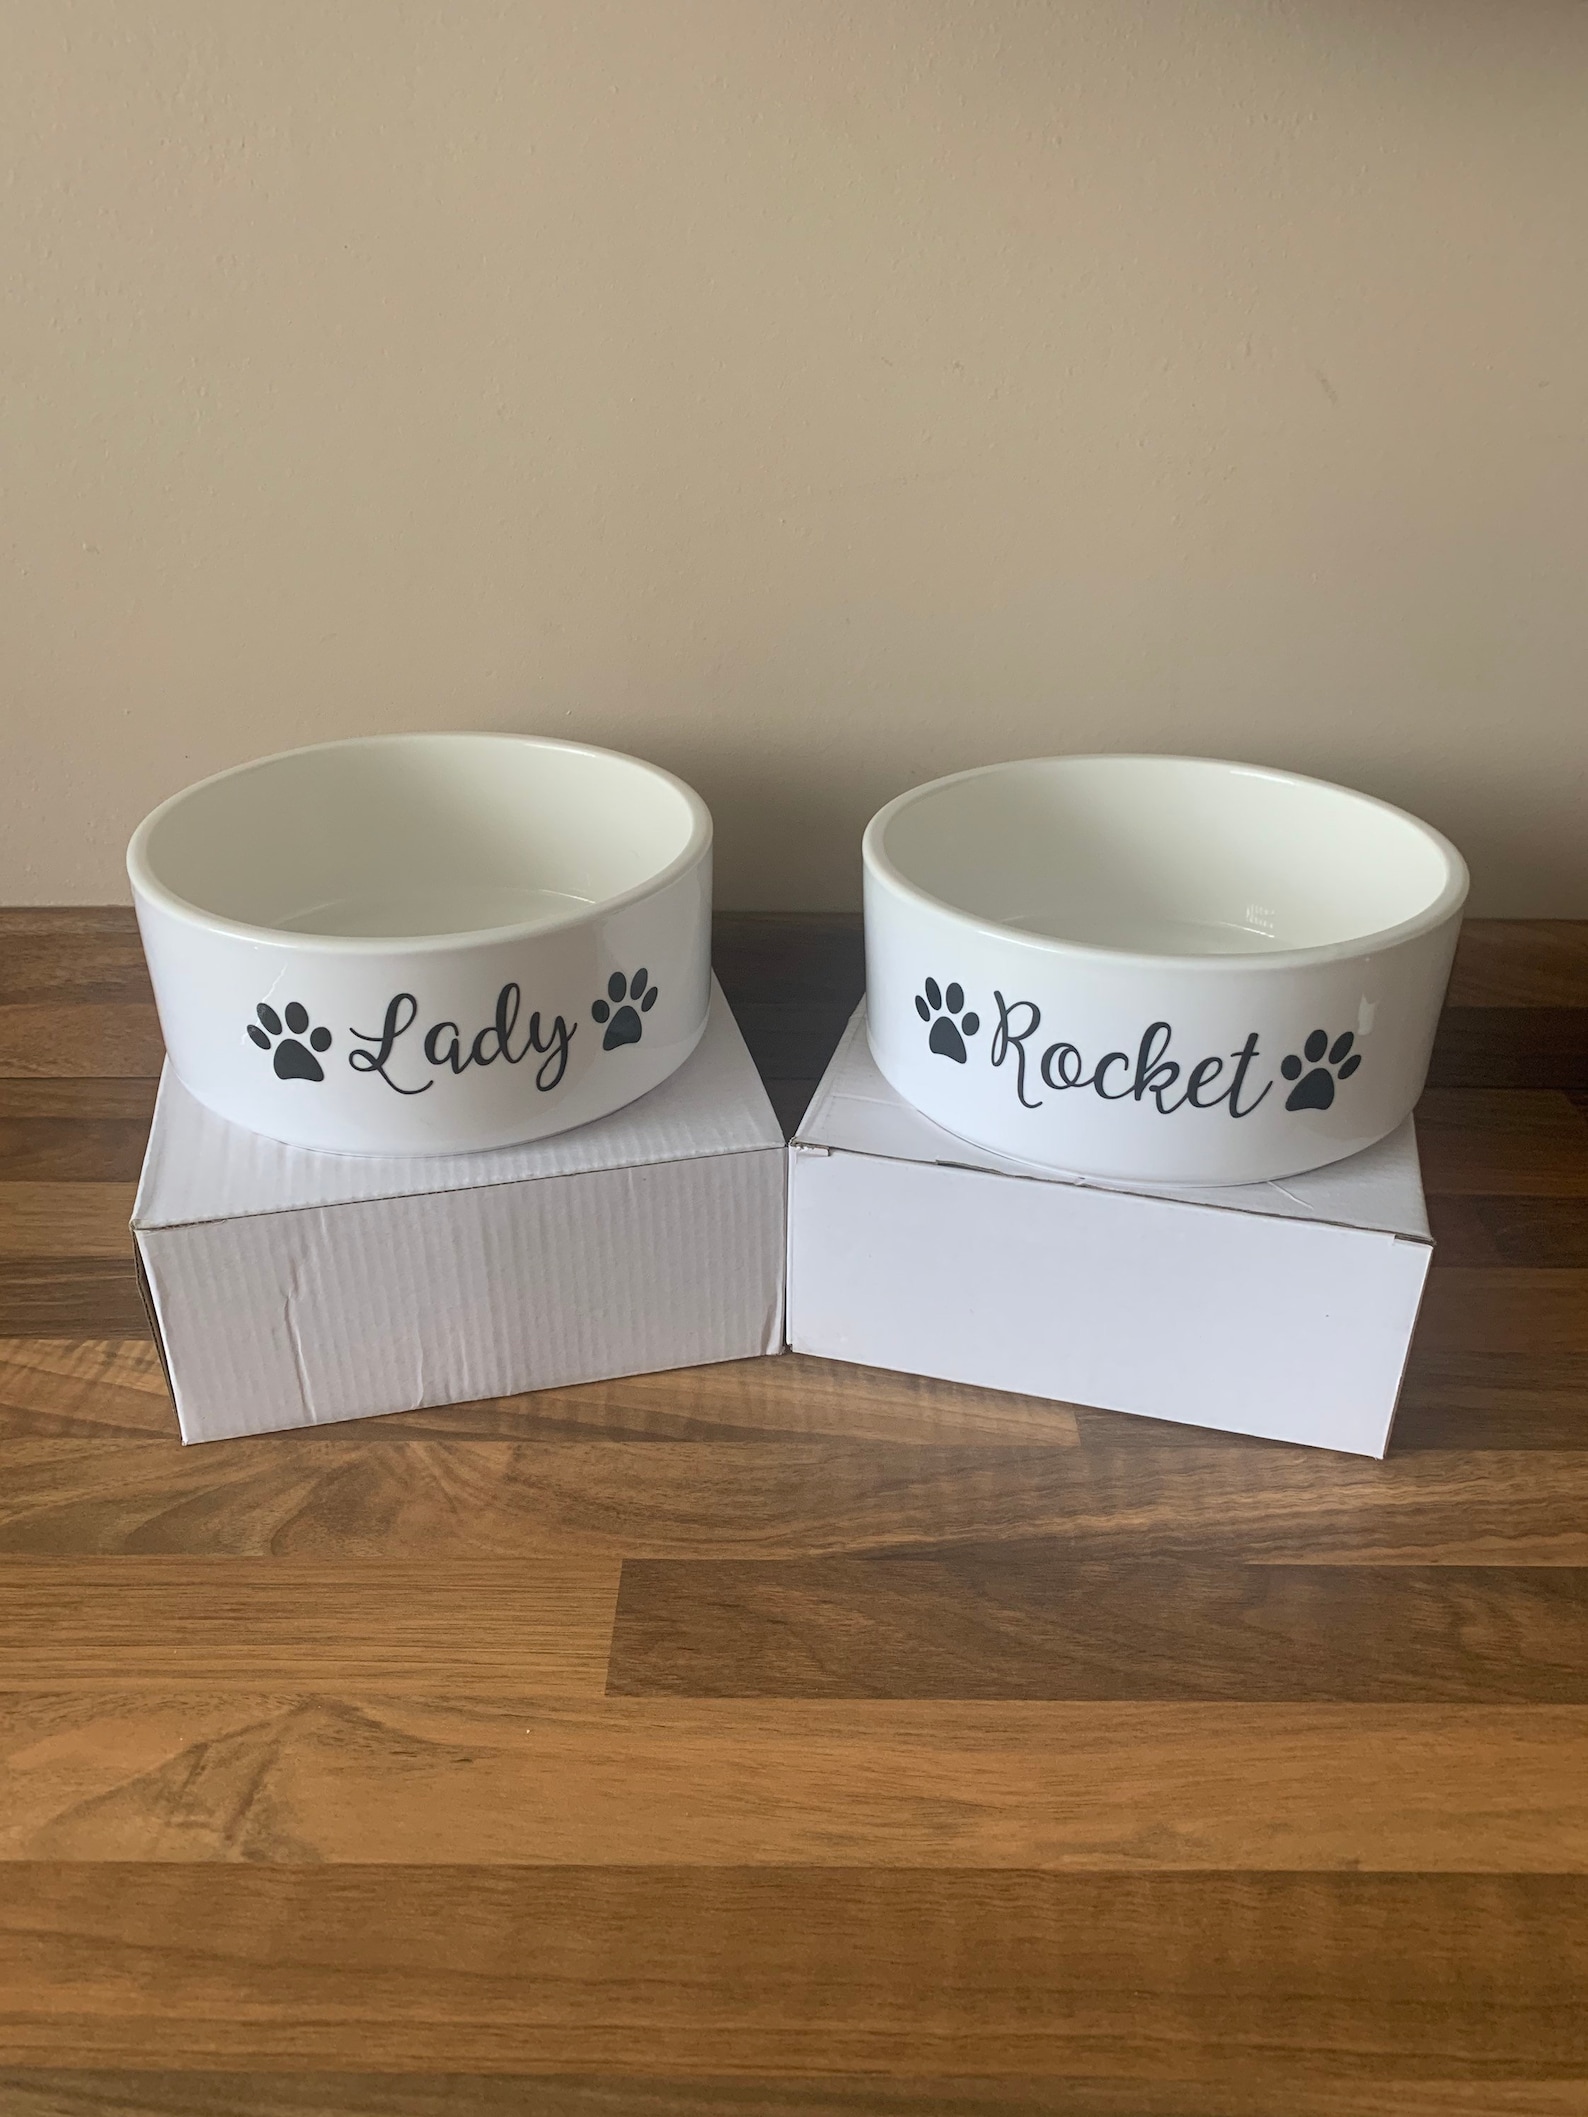 Personalised large ceramic dog bowls | Etsy